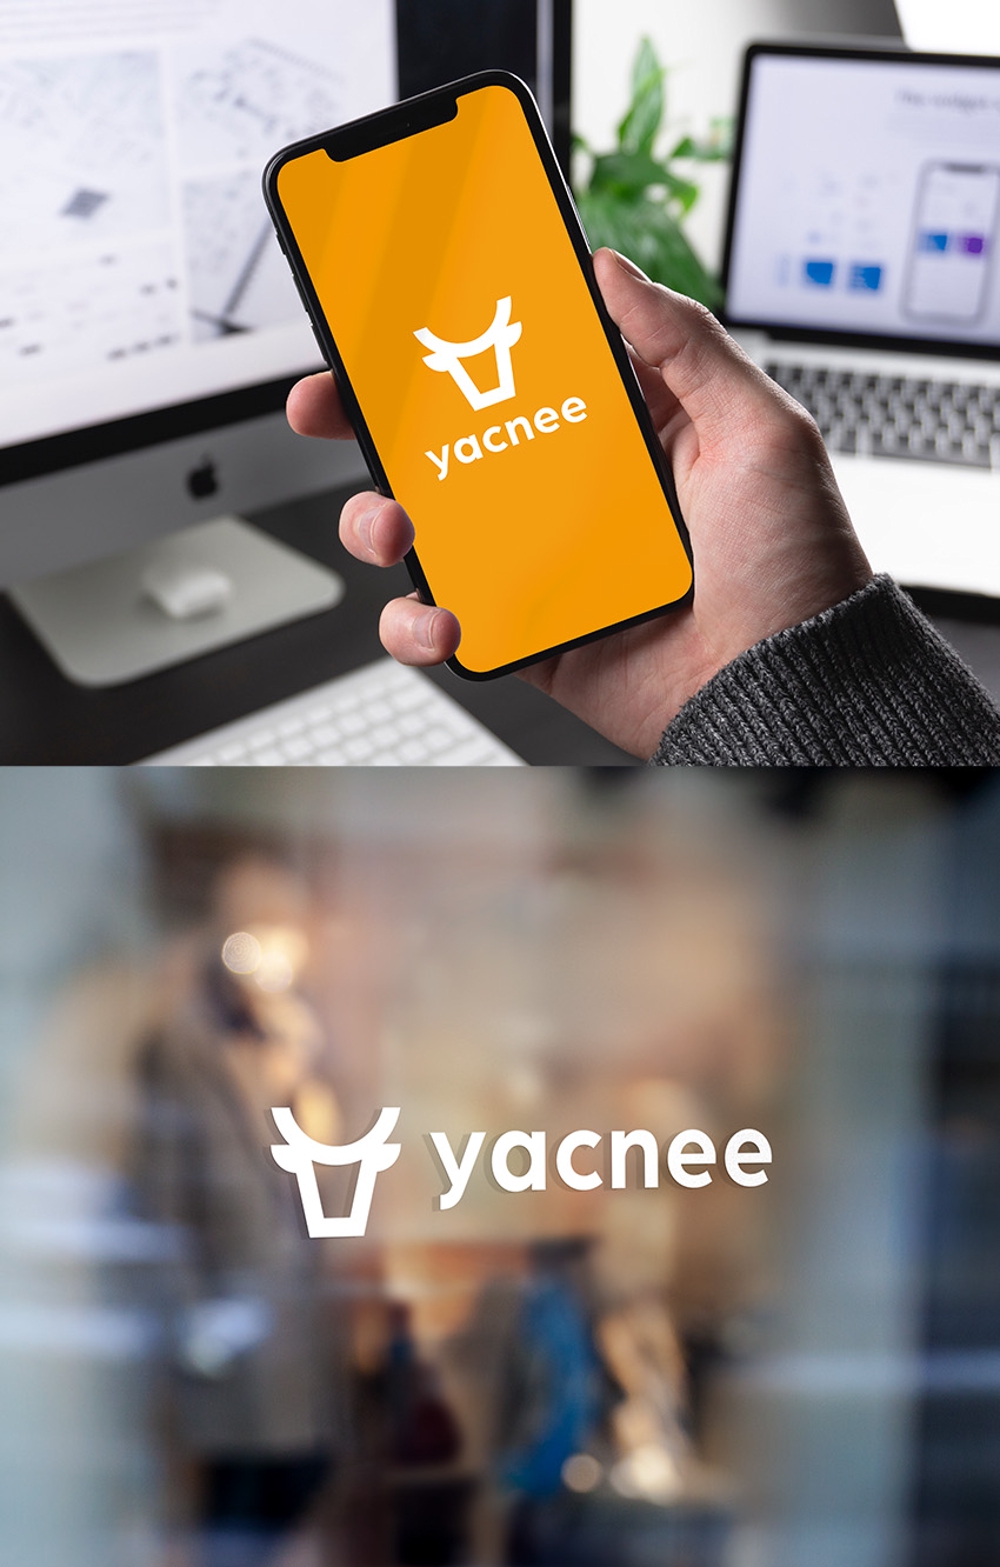 新しい分譲マンション管理を行う新会社「株式会社yacnee」のロゴを募集